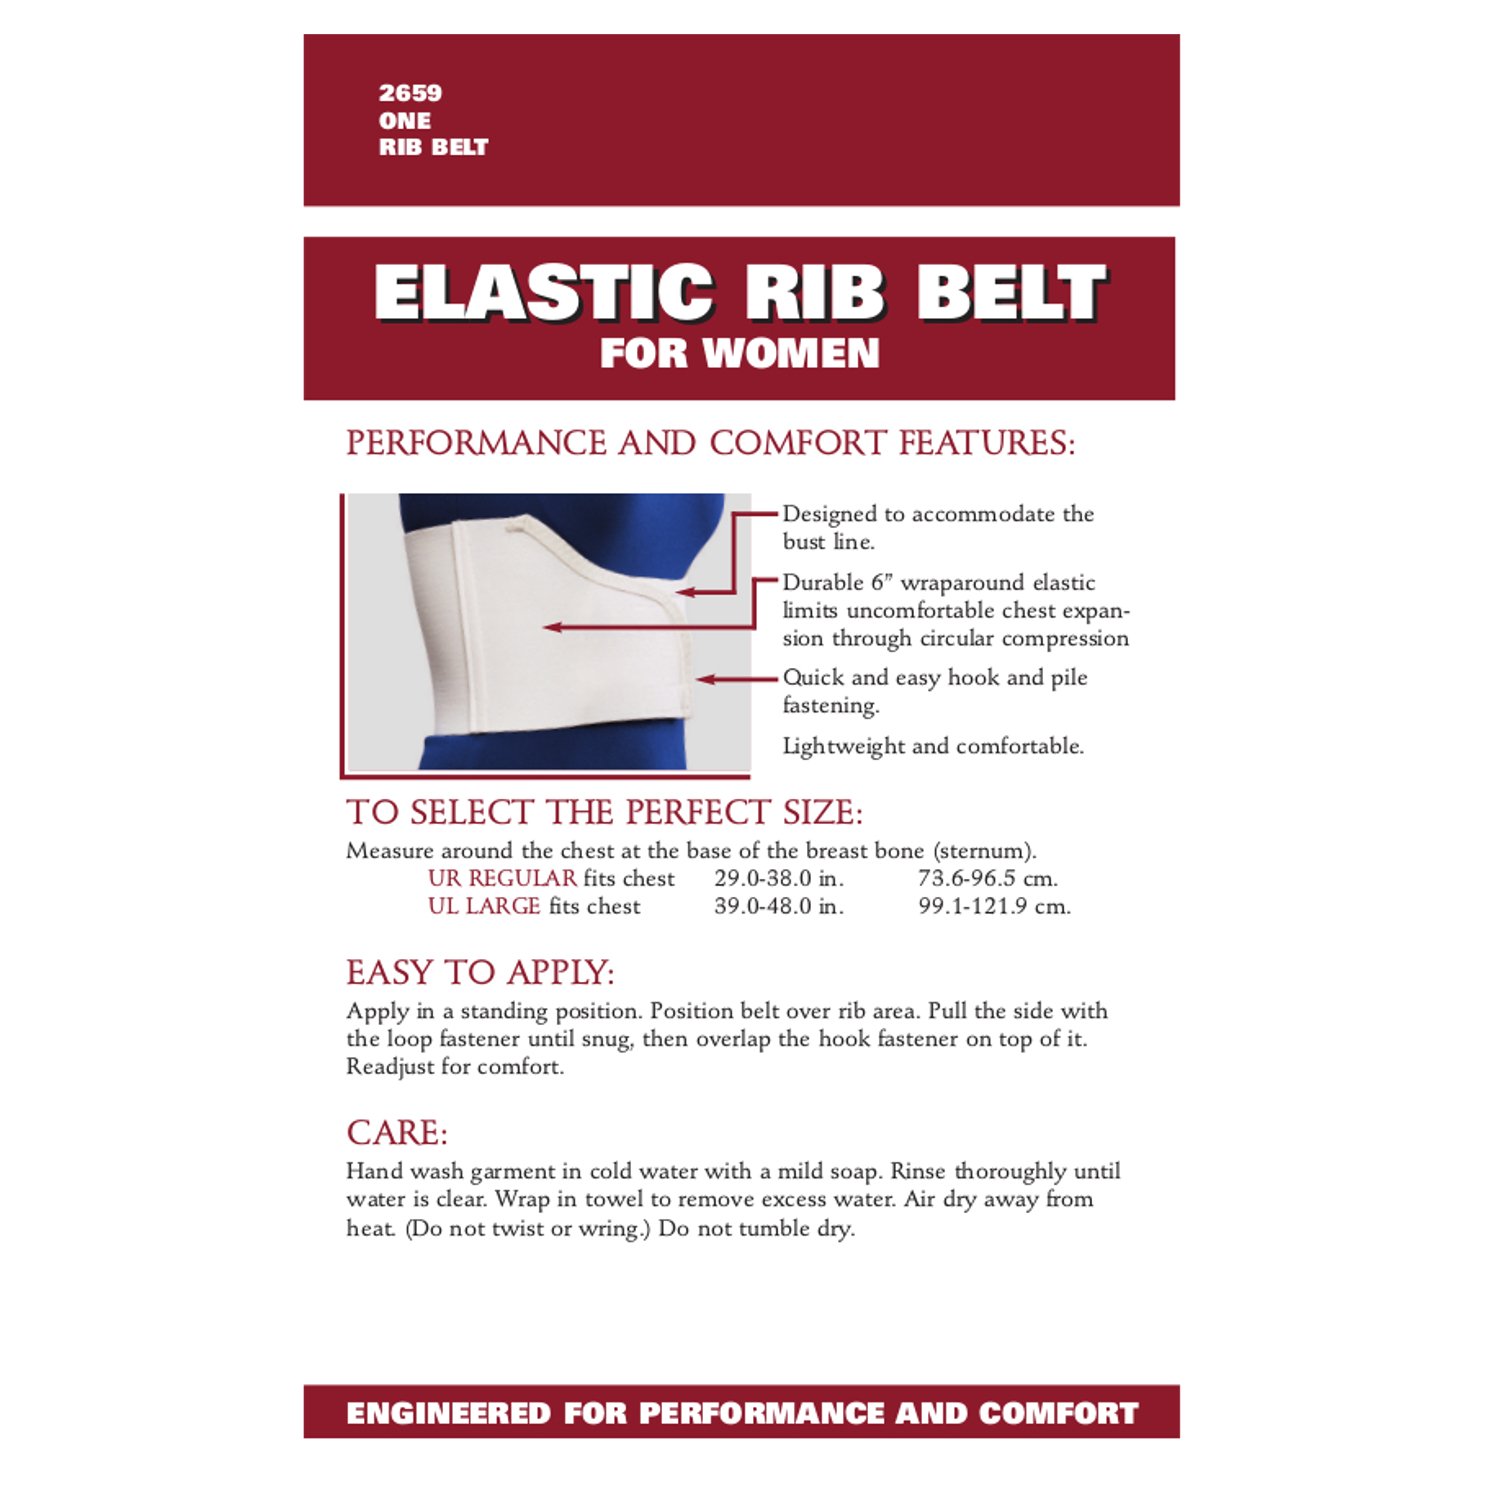 OTC Elastic Chest Panel Universally Adjustable Rib Belt for Women, White, Regular